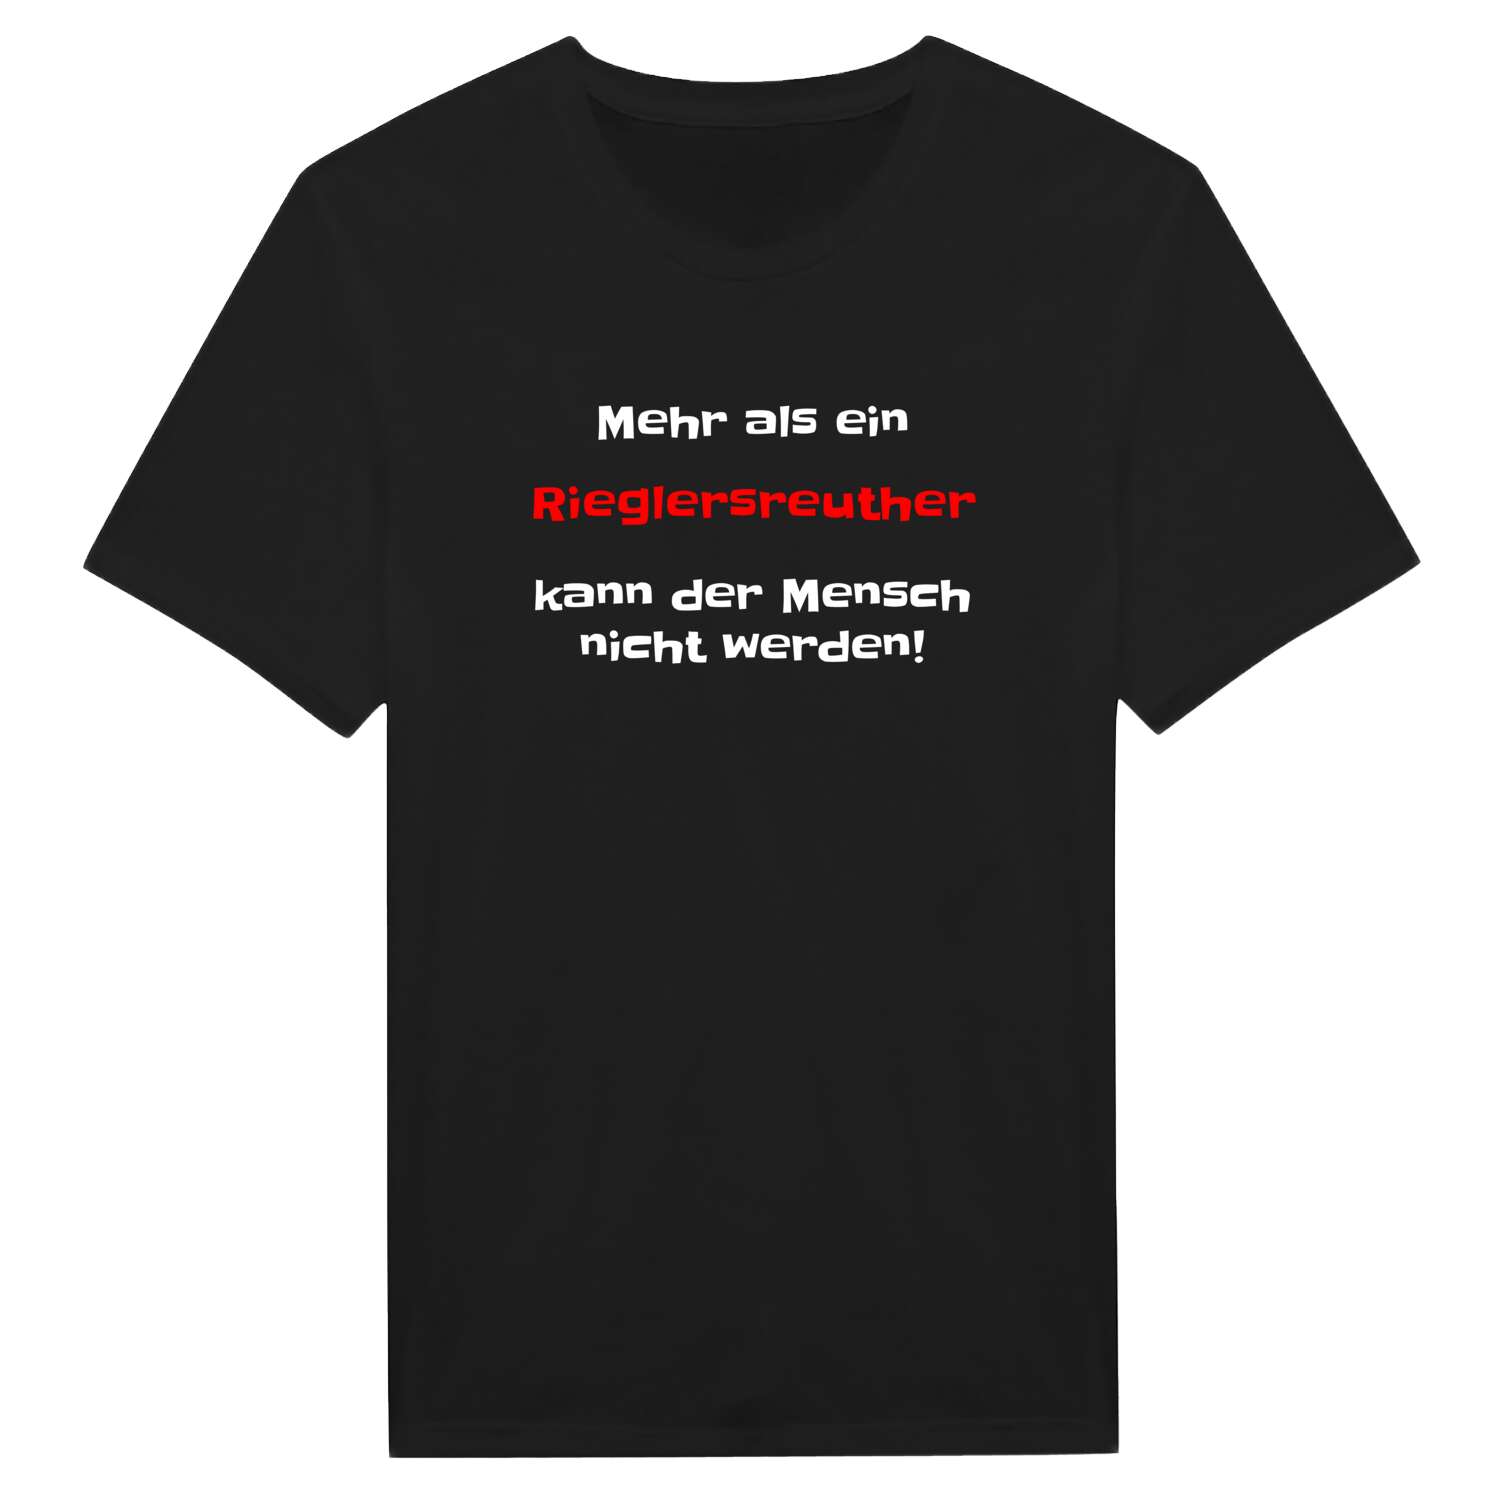 Rieglersreuth T-Shirt »Mehr als ein«